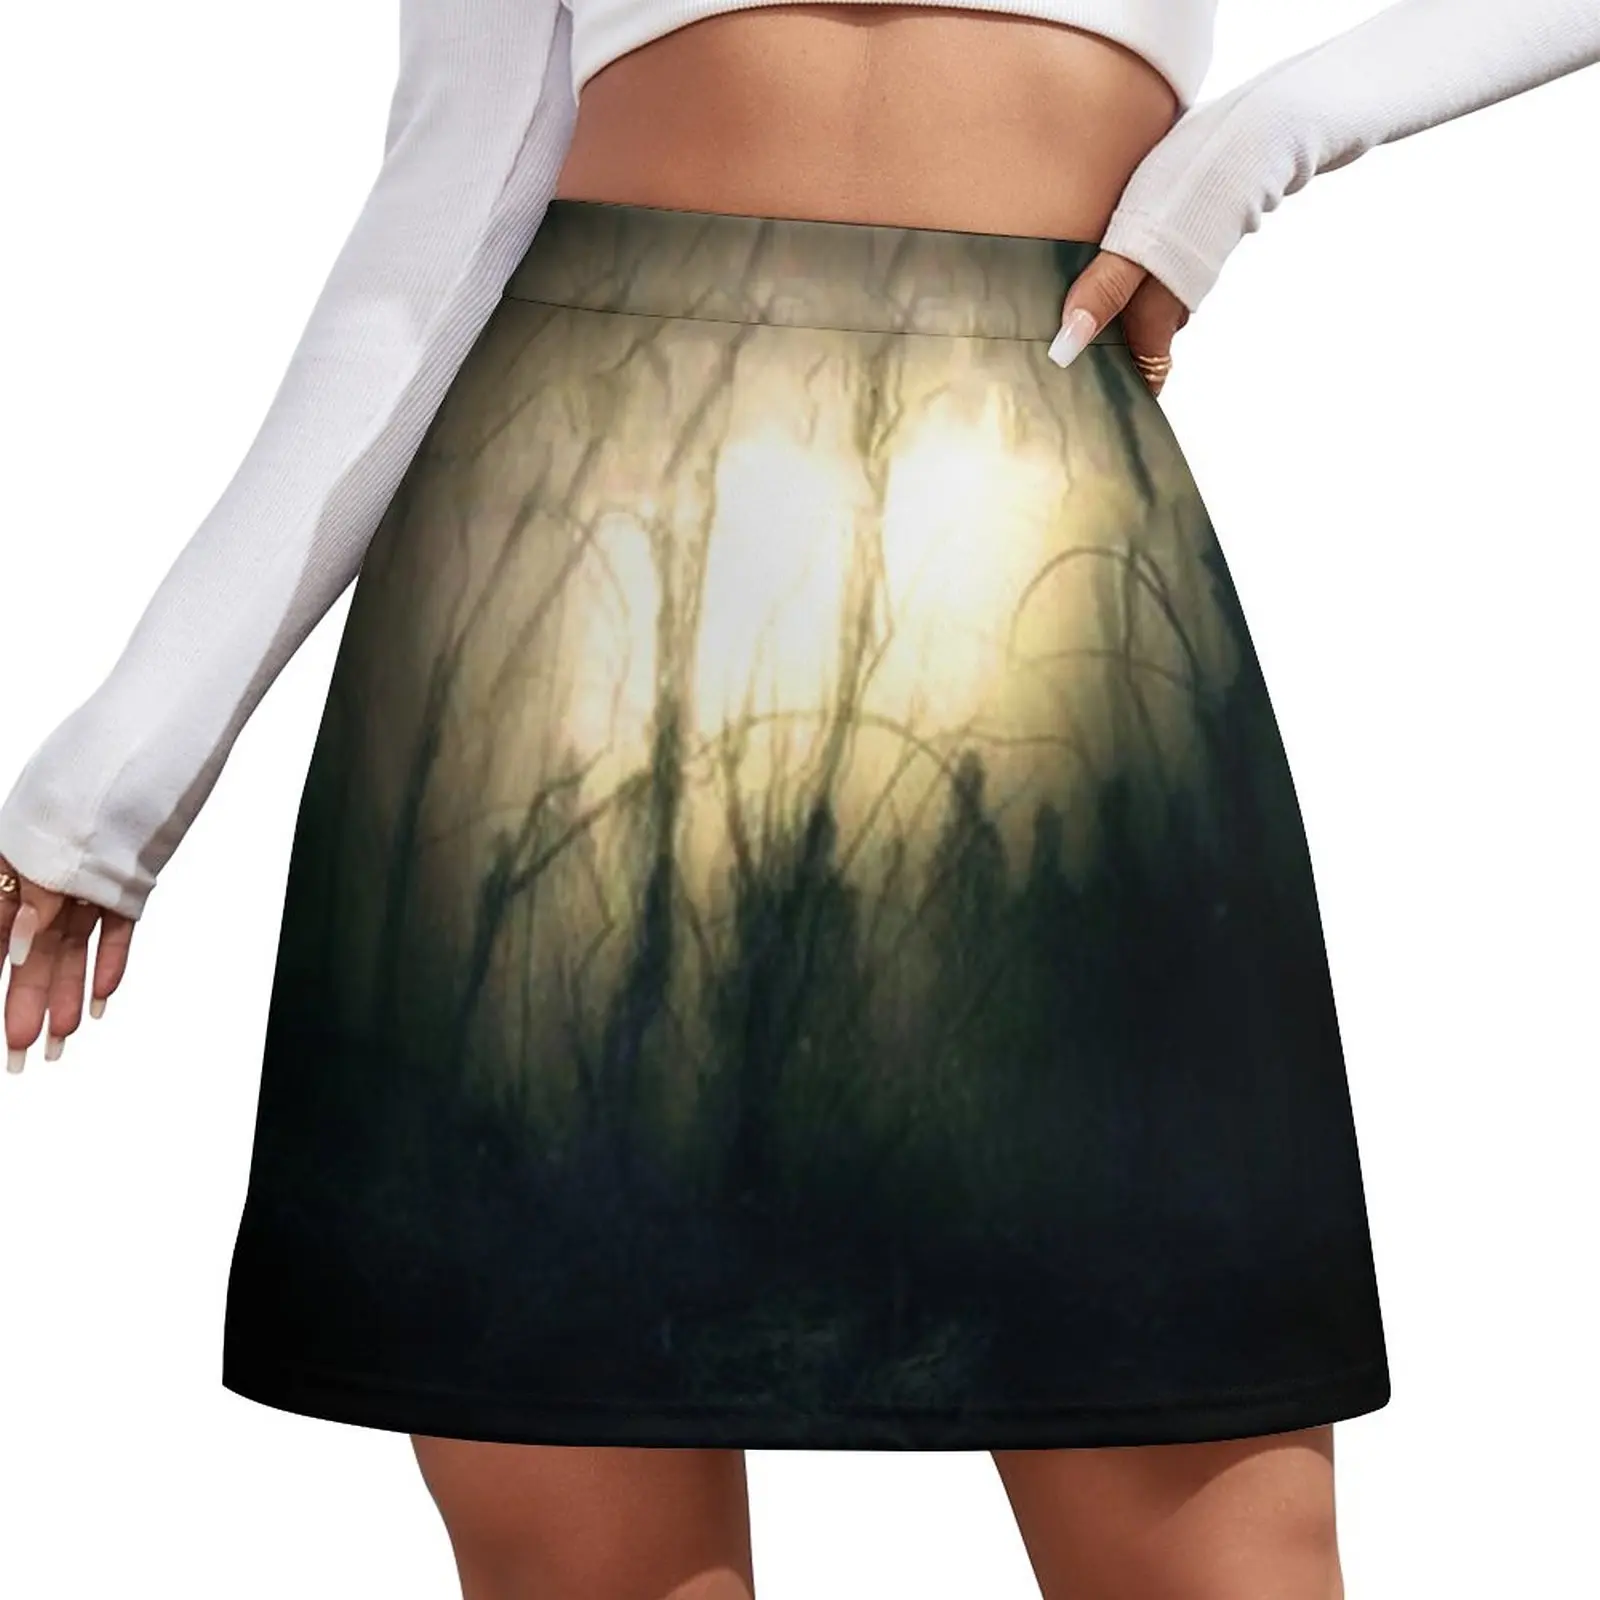 Shadows of black waters Mini Skirt women's clothing korea stylish mini skirt short skirt for women Miniskirt